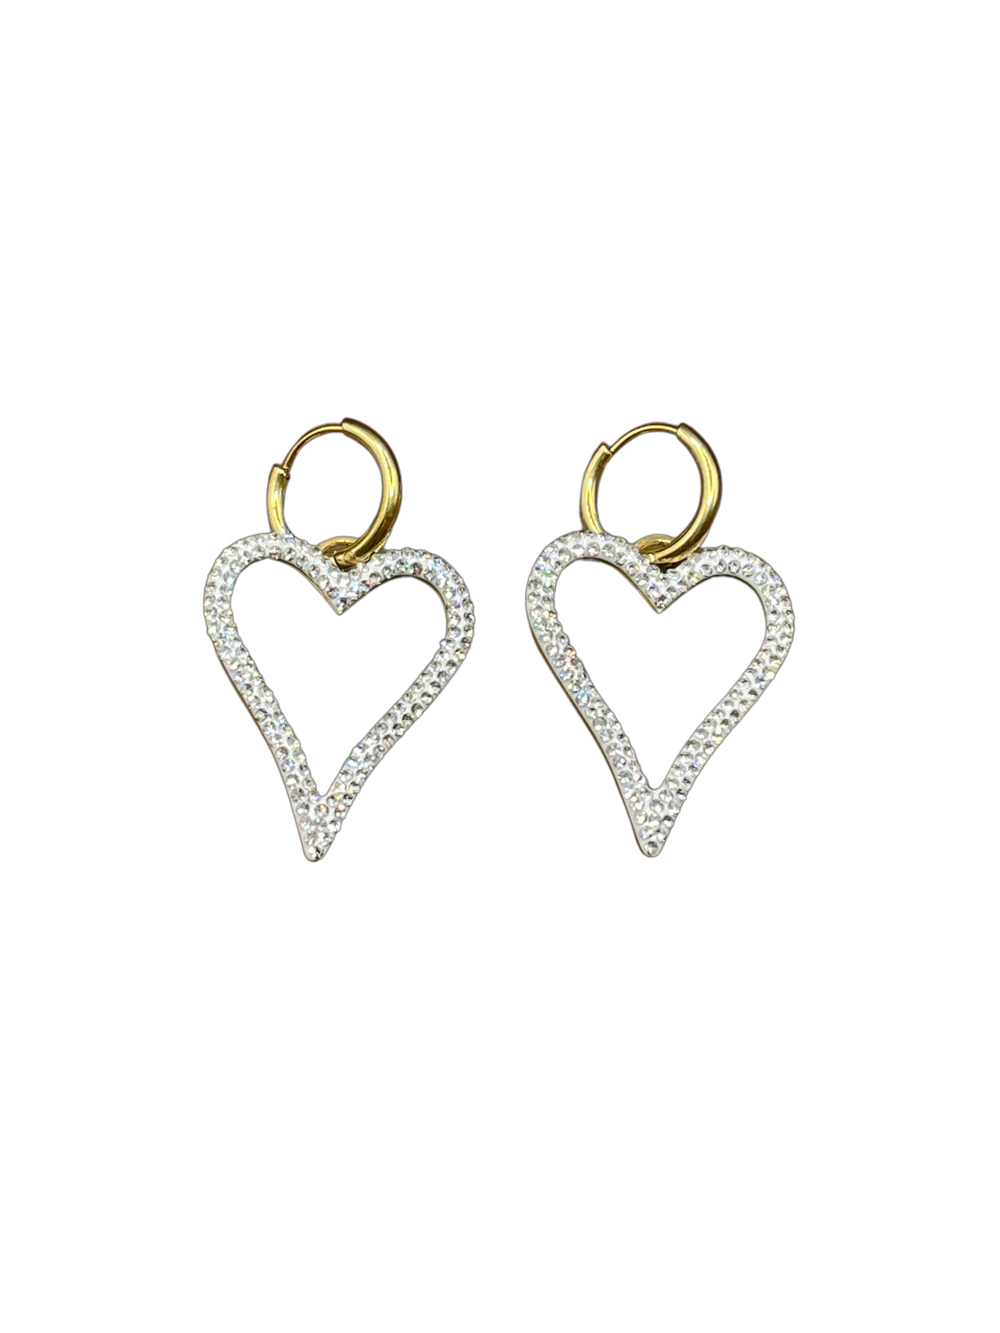 Love earrings in Silver by Bonnie